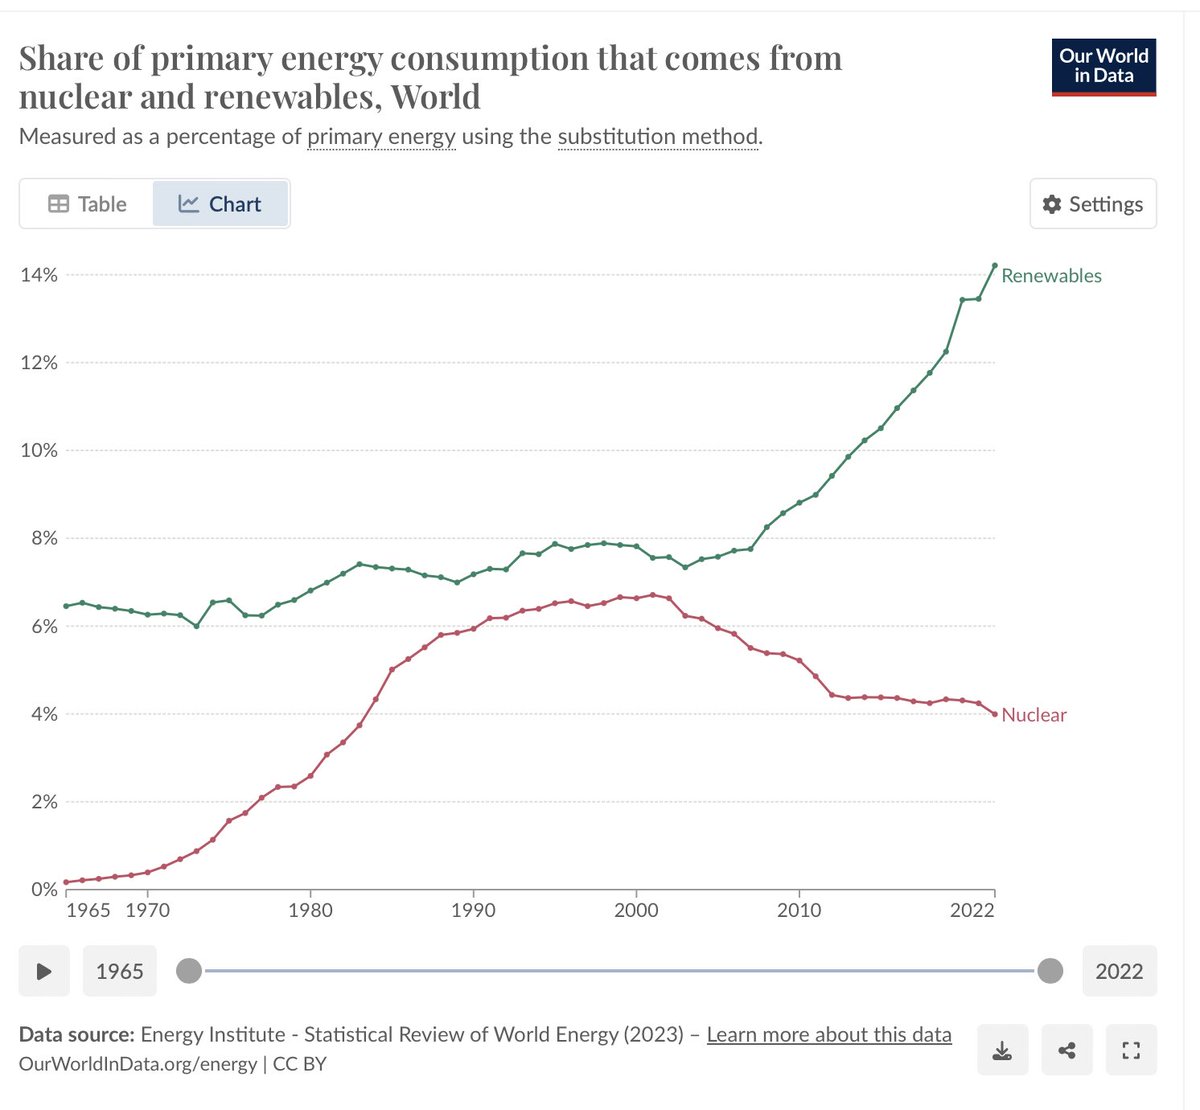 Fornybar energiproduksjon har vokst voldsomt i mange år. Atomkraft har sunket og stagnert. Det handler nok mye om at bygging av atomkraftverk er komplisert, langsomt og relativt dyrt med dagens teknologi, mens sol og vind kan bygges ut raskt og stadig billigere.